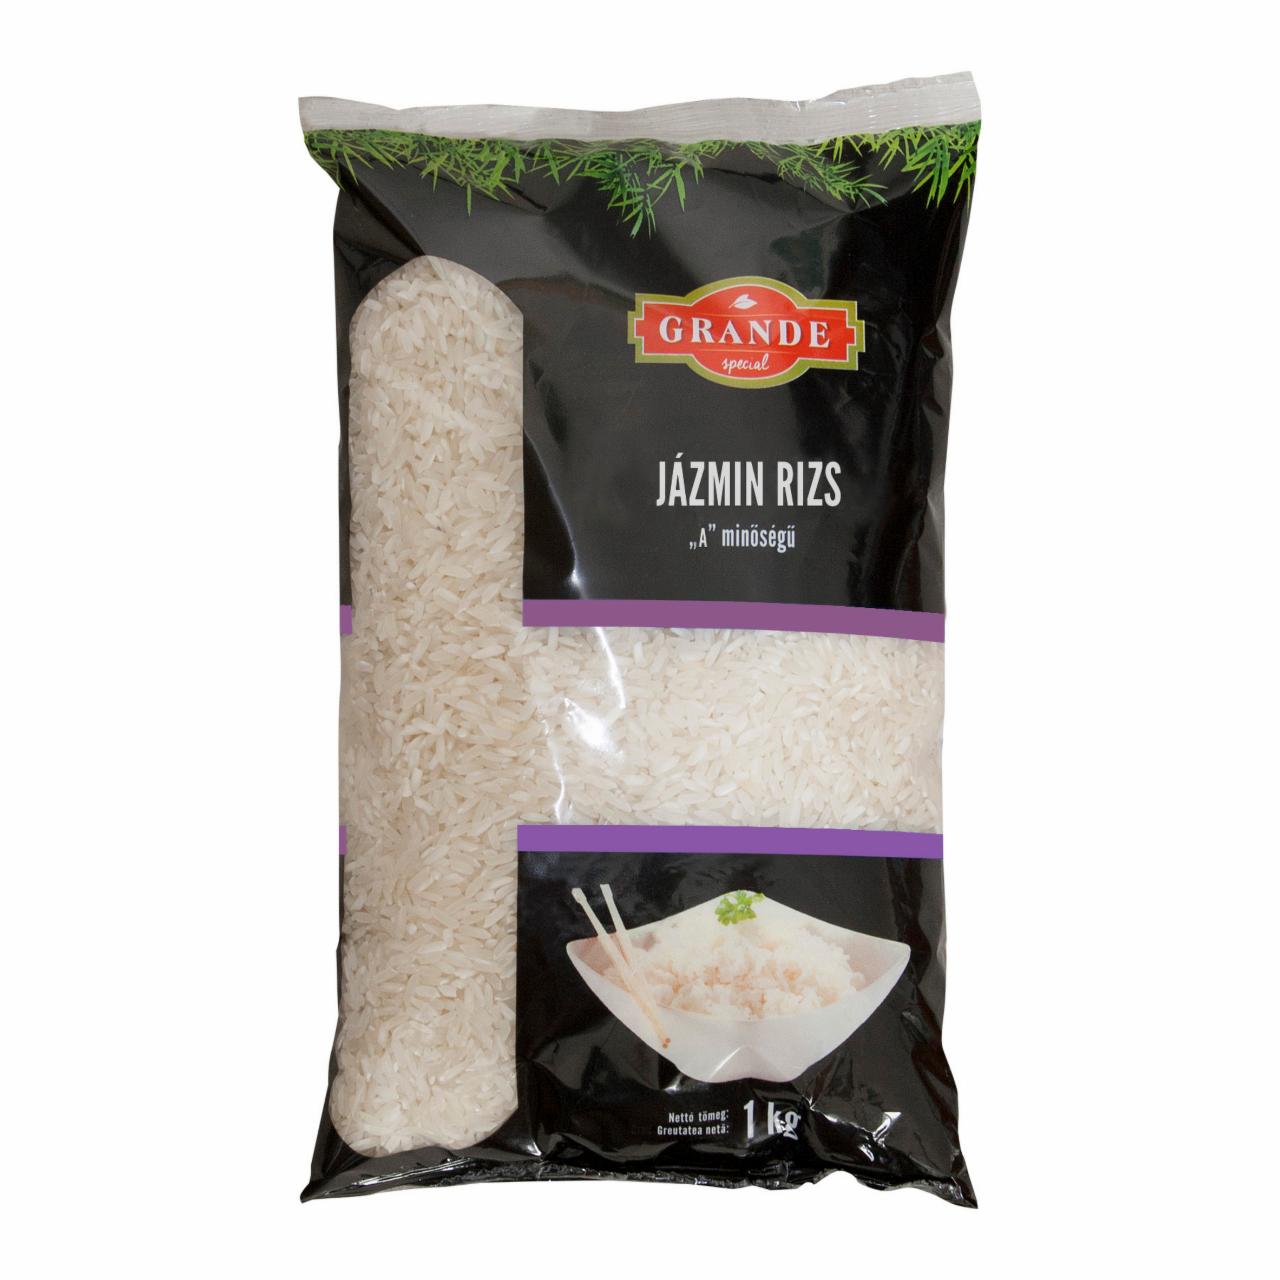 Képek - GRANDE jázmin rizs 1kg